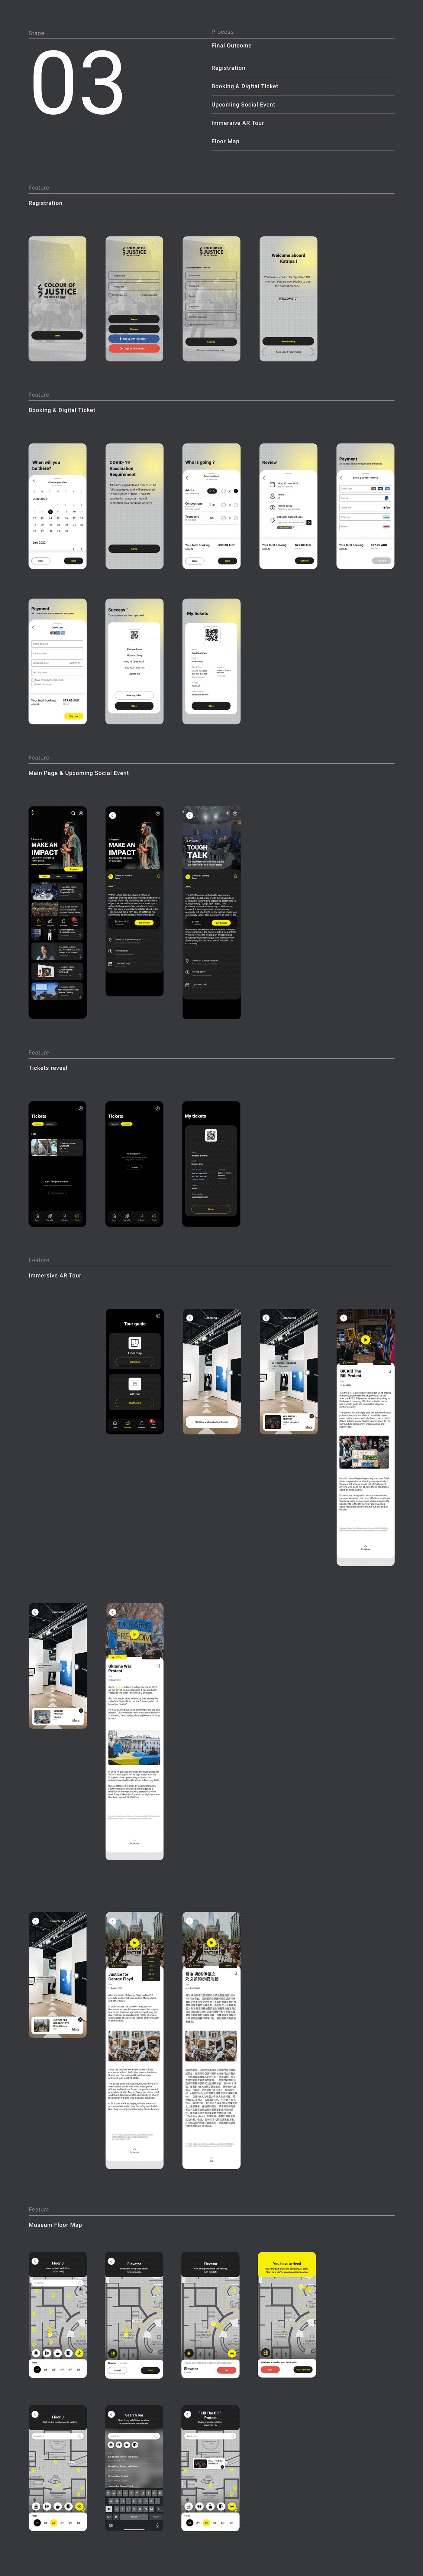 UX UI Figma ui design user interface Mobile app Case Study user experience UI/UX app design